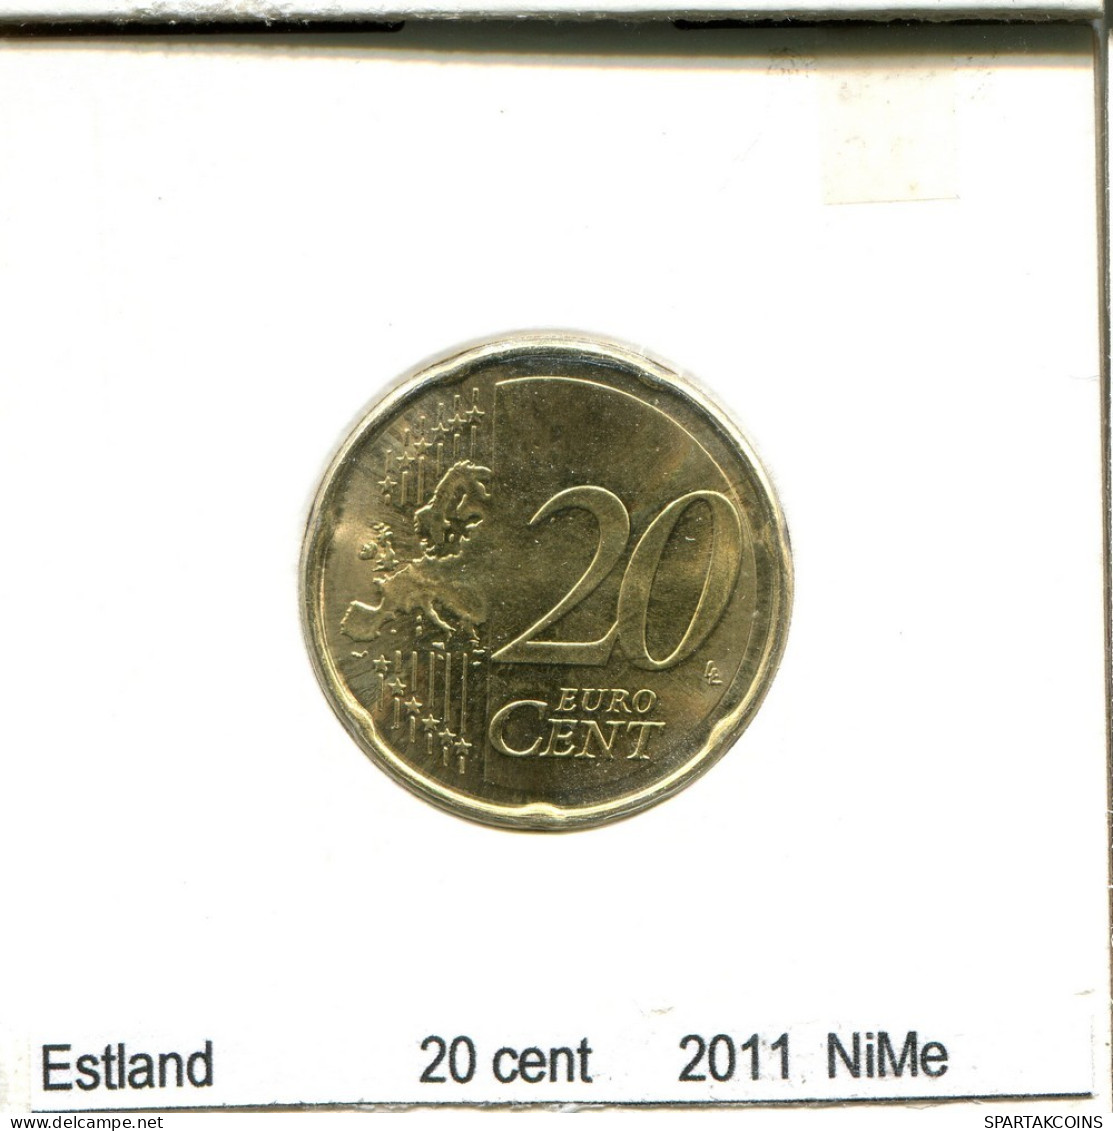 20 CENTS 2011 ESTLAND ESTONIA Münze #AS688.D.A - Estonia